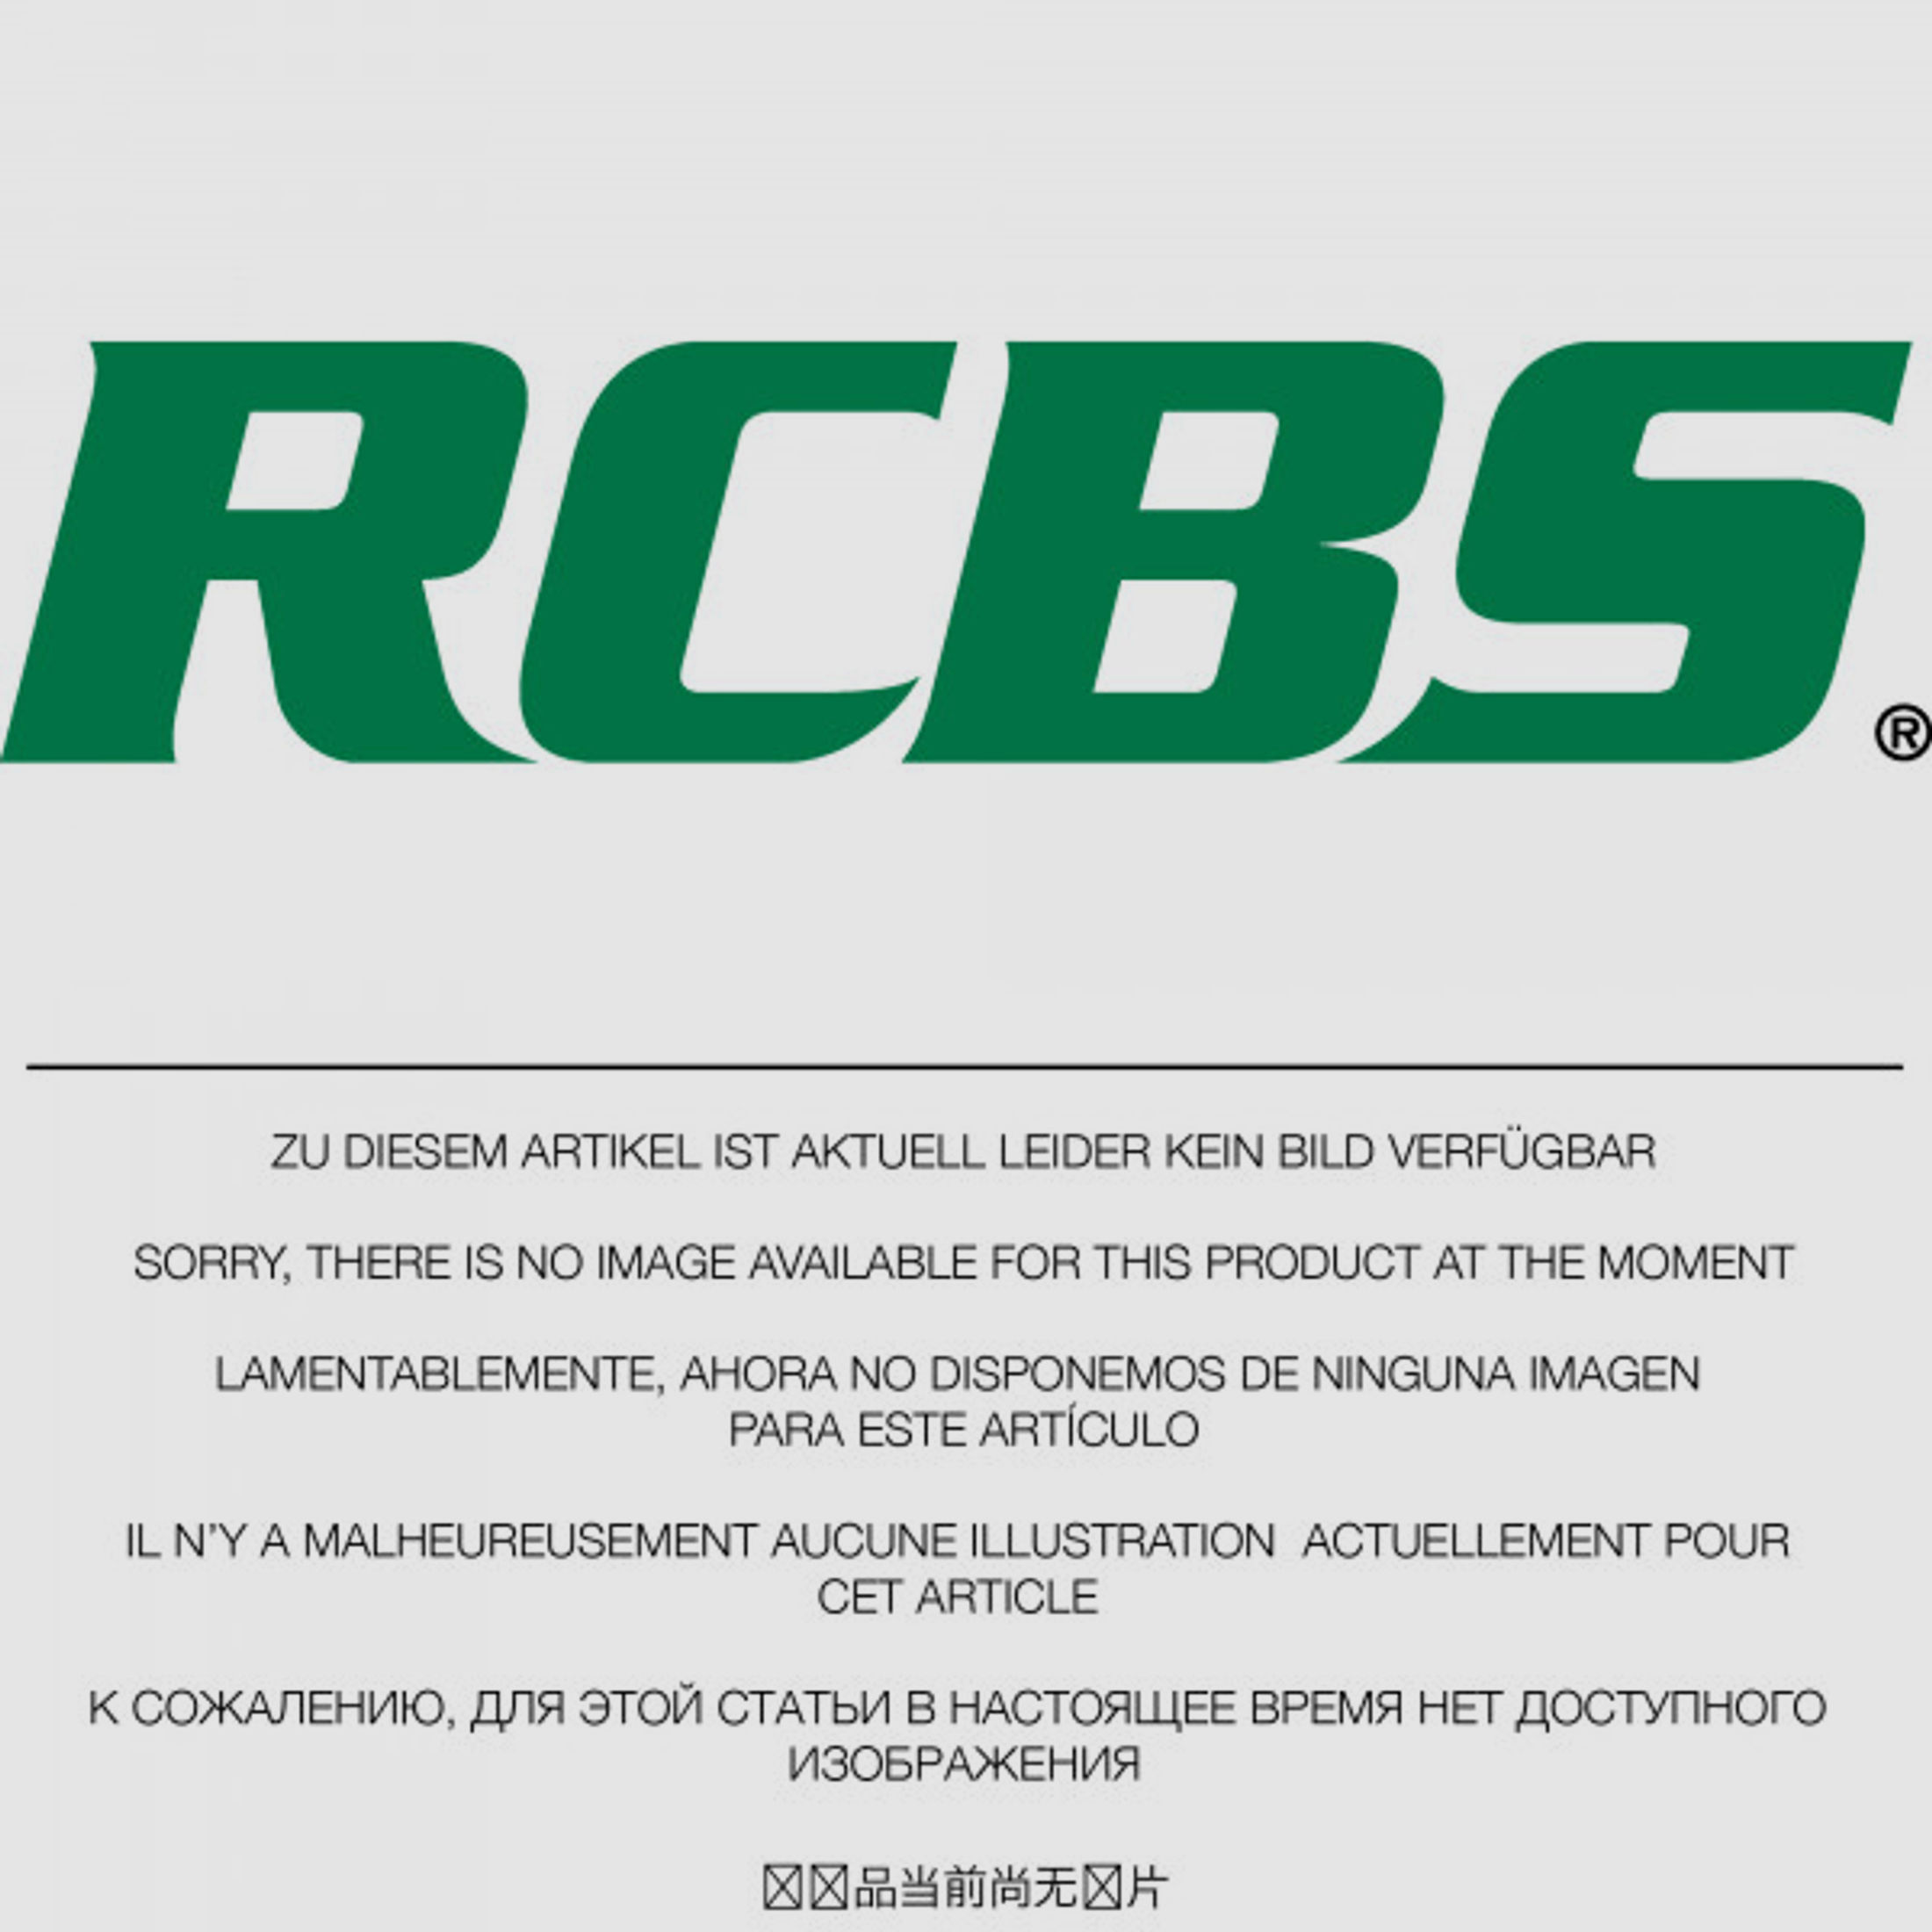 RCBS Lube-A-Matic Top Punch Geschoss Setzstempel Nr. 424 #82528